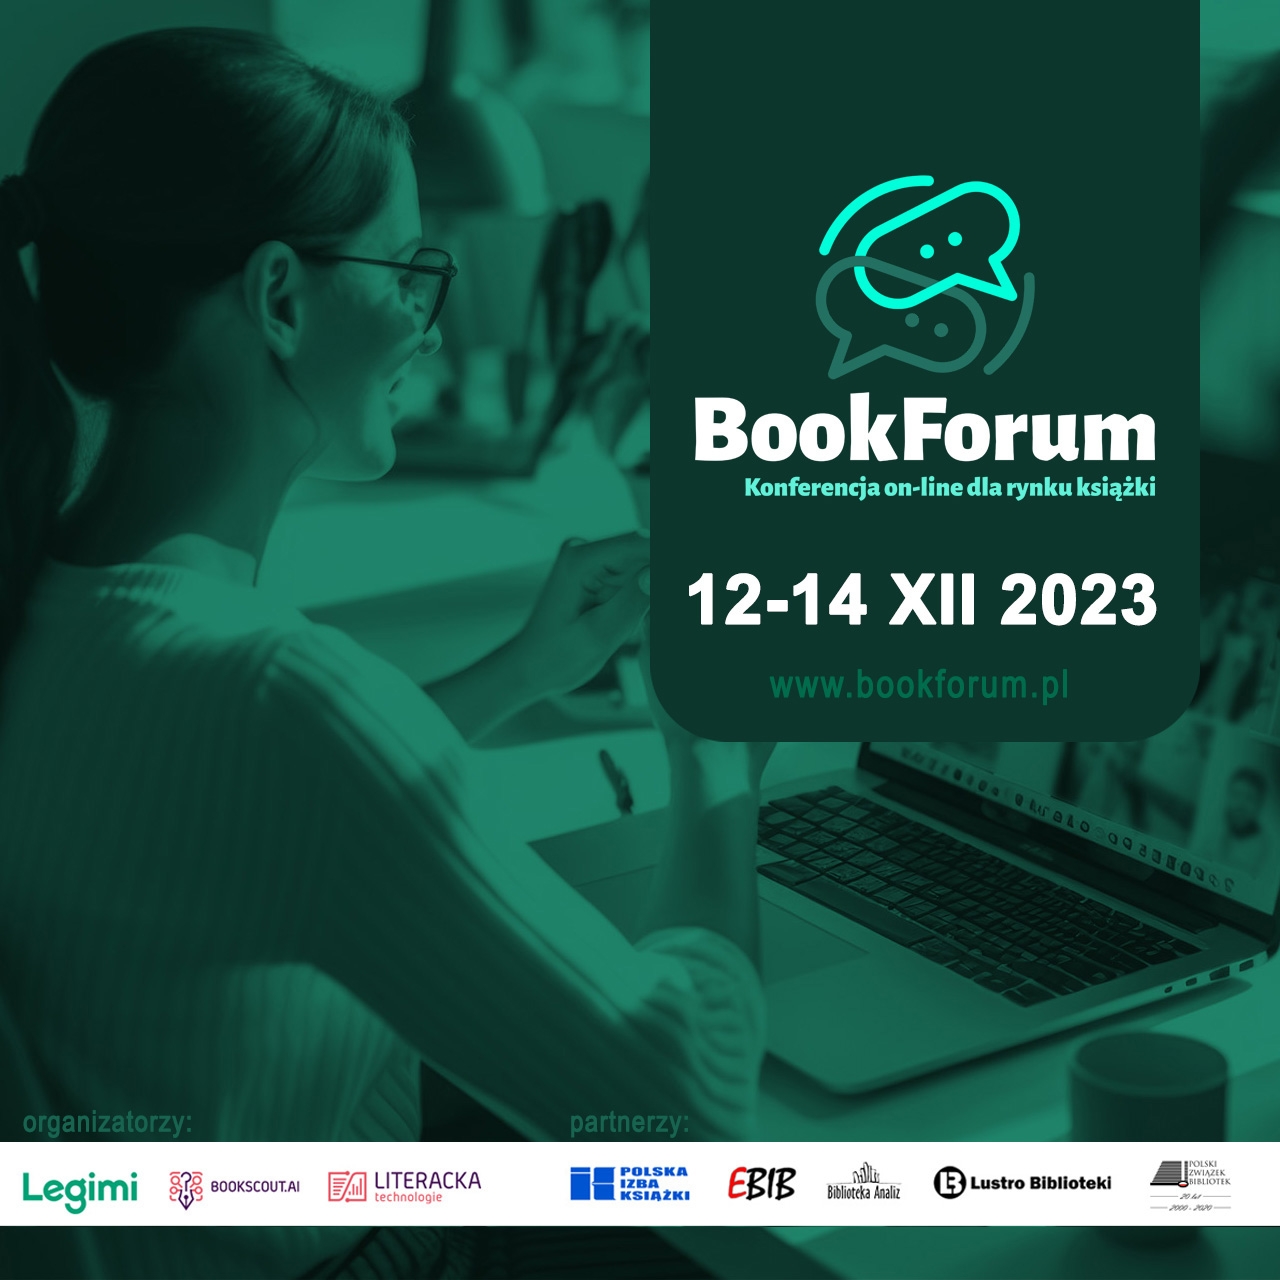 BookForum